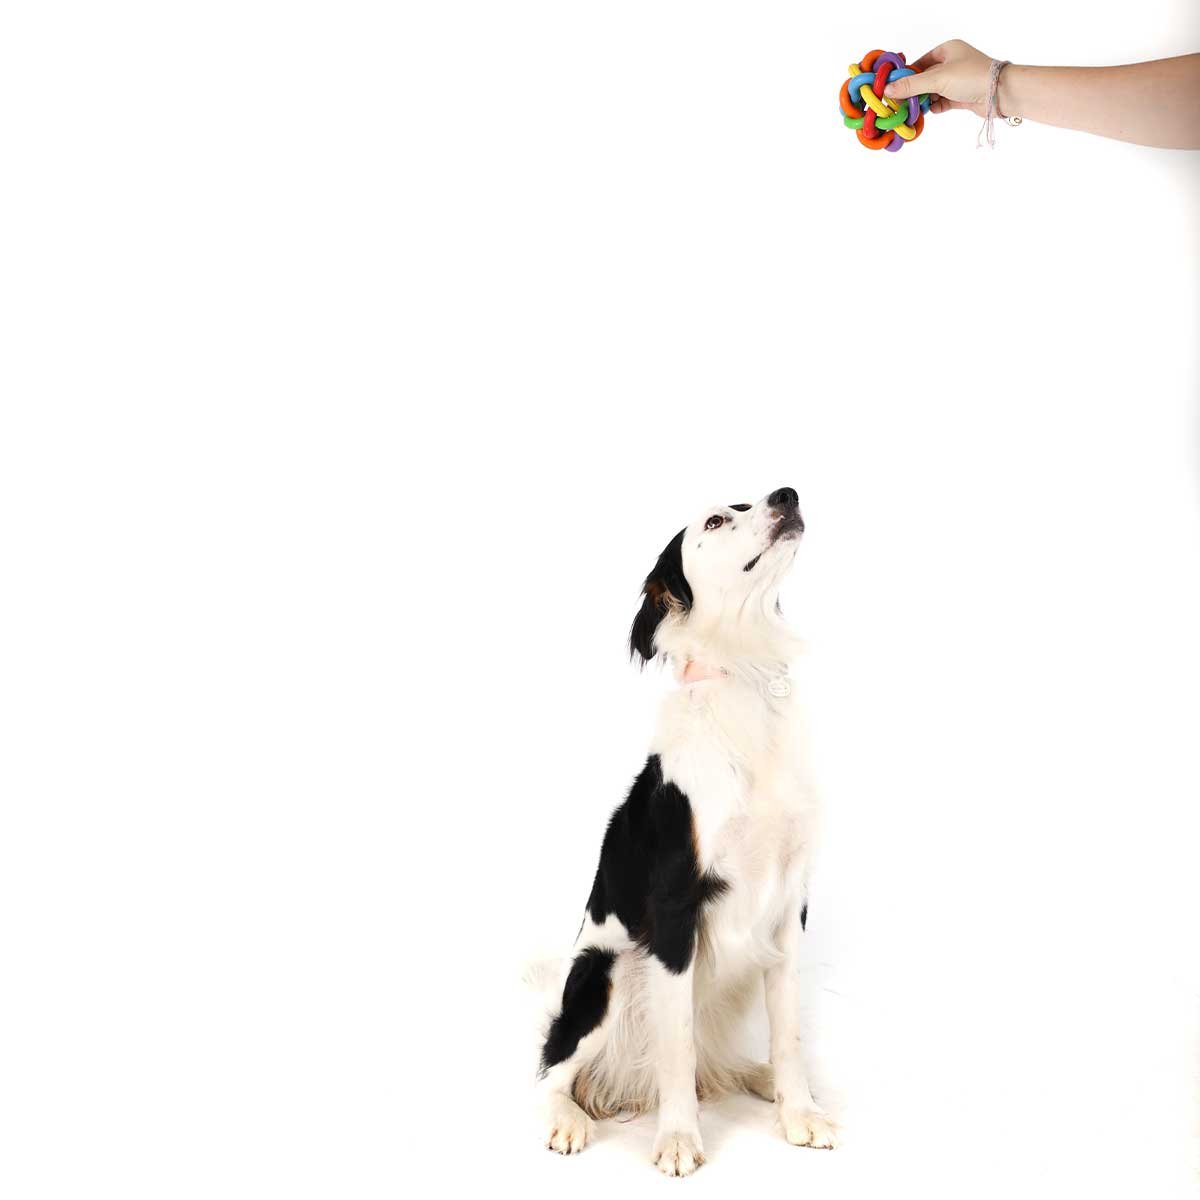 Balle pour chien en caoutchouc multicolore Zolia - 9,5 cm